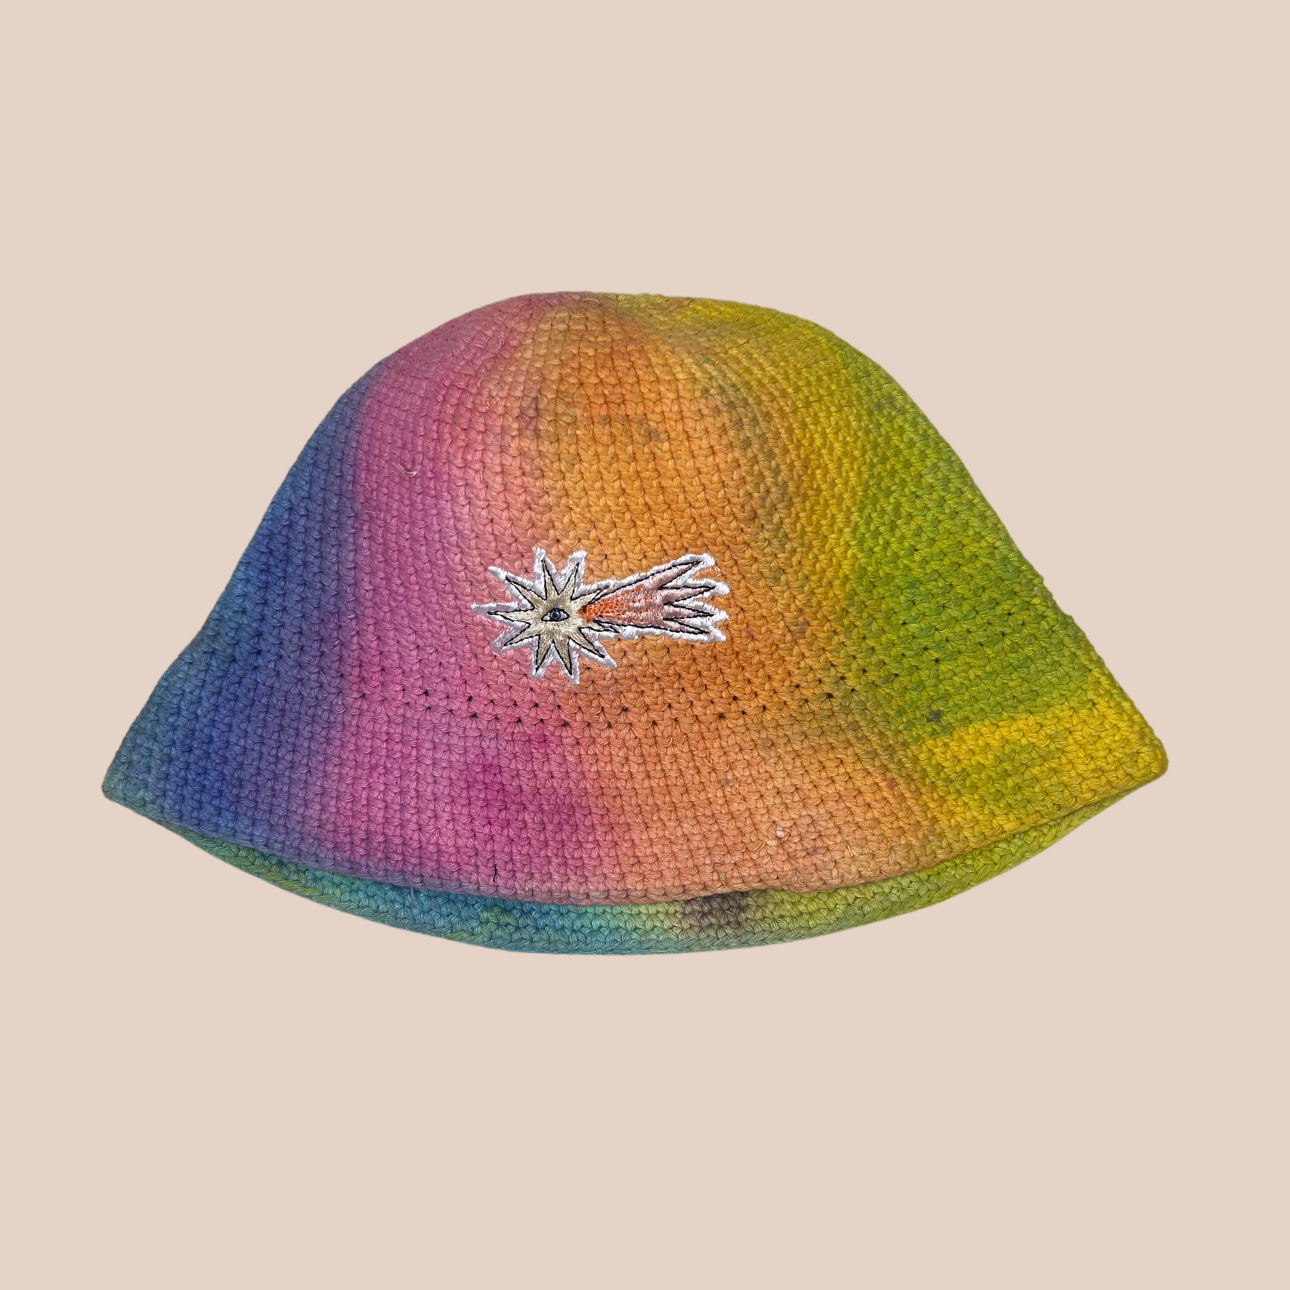 Un bucket hat crocheté en laine et acrylique, arborant des couleurs vives et audacieuses, motif etoile filante